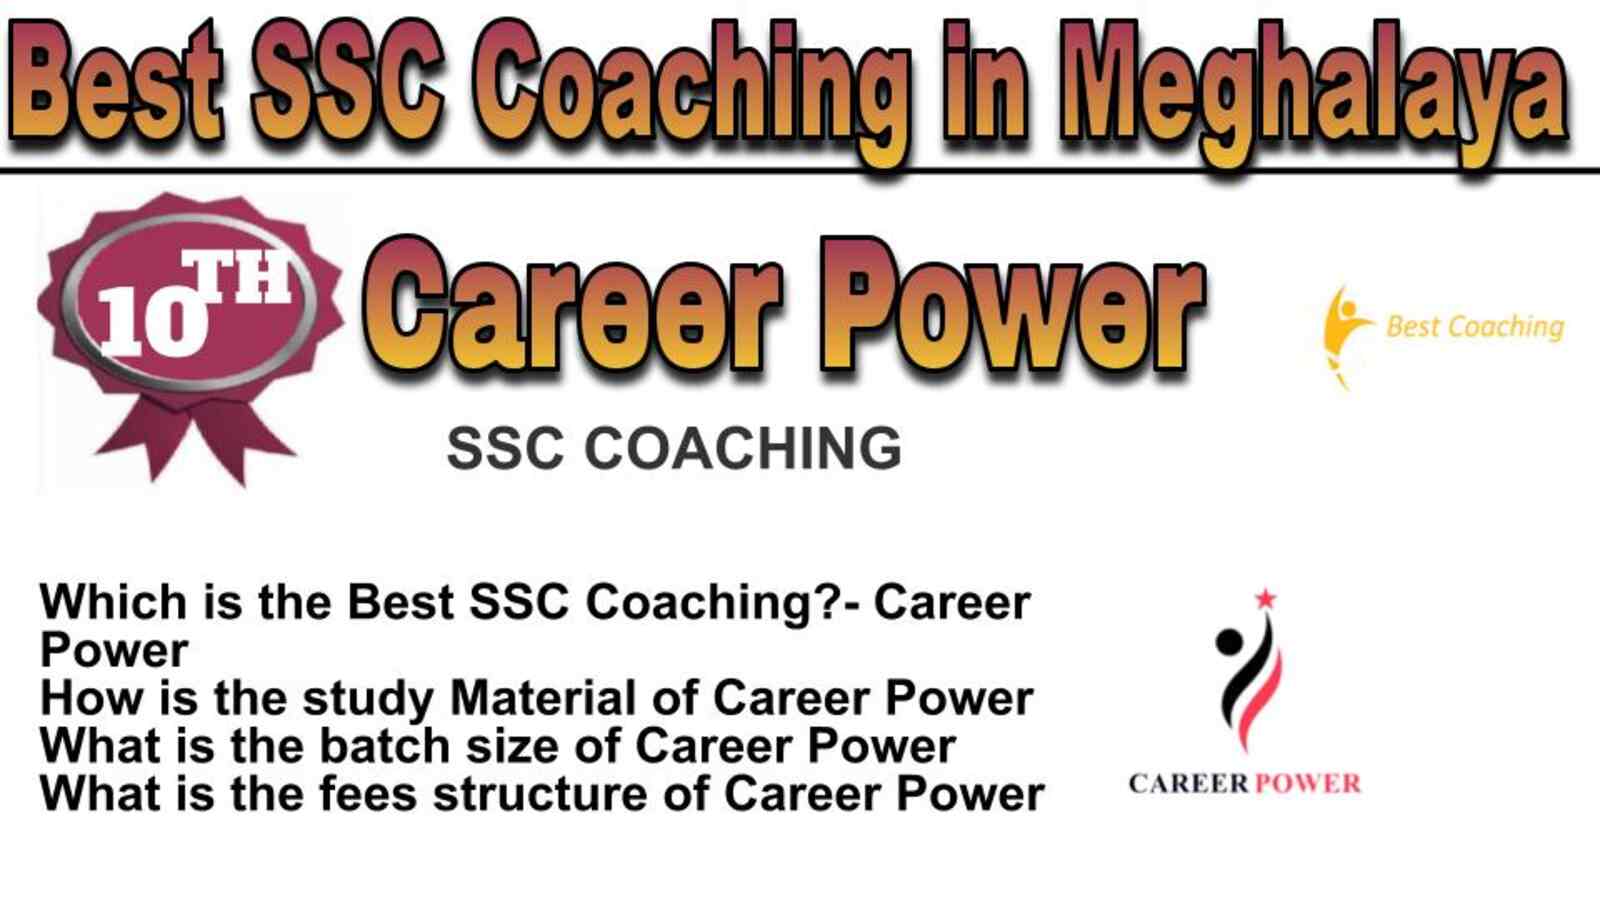 Rank 10 best SSC coaching in Meghalaya